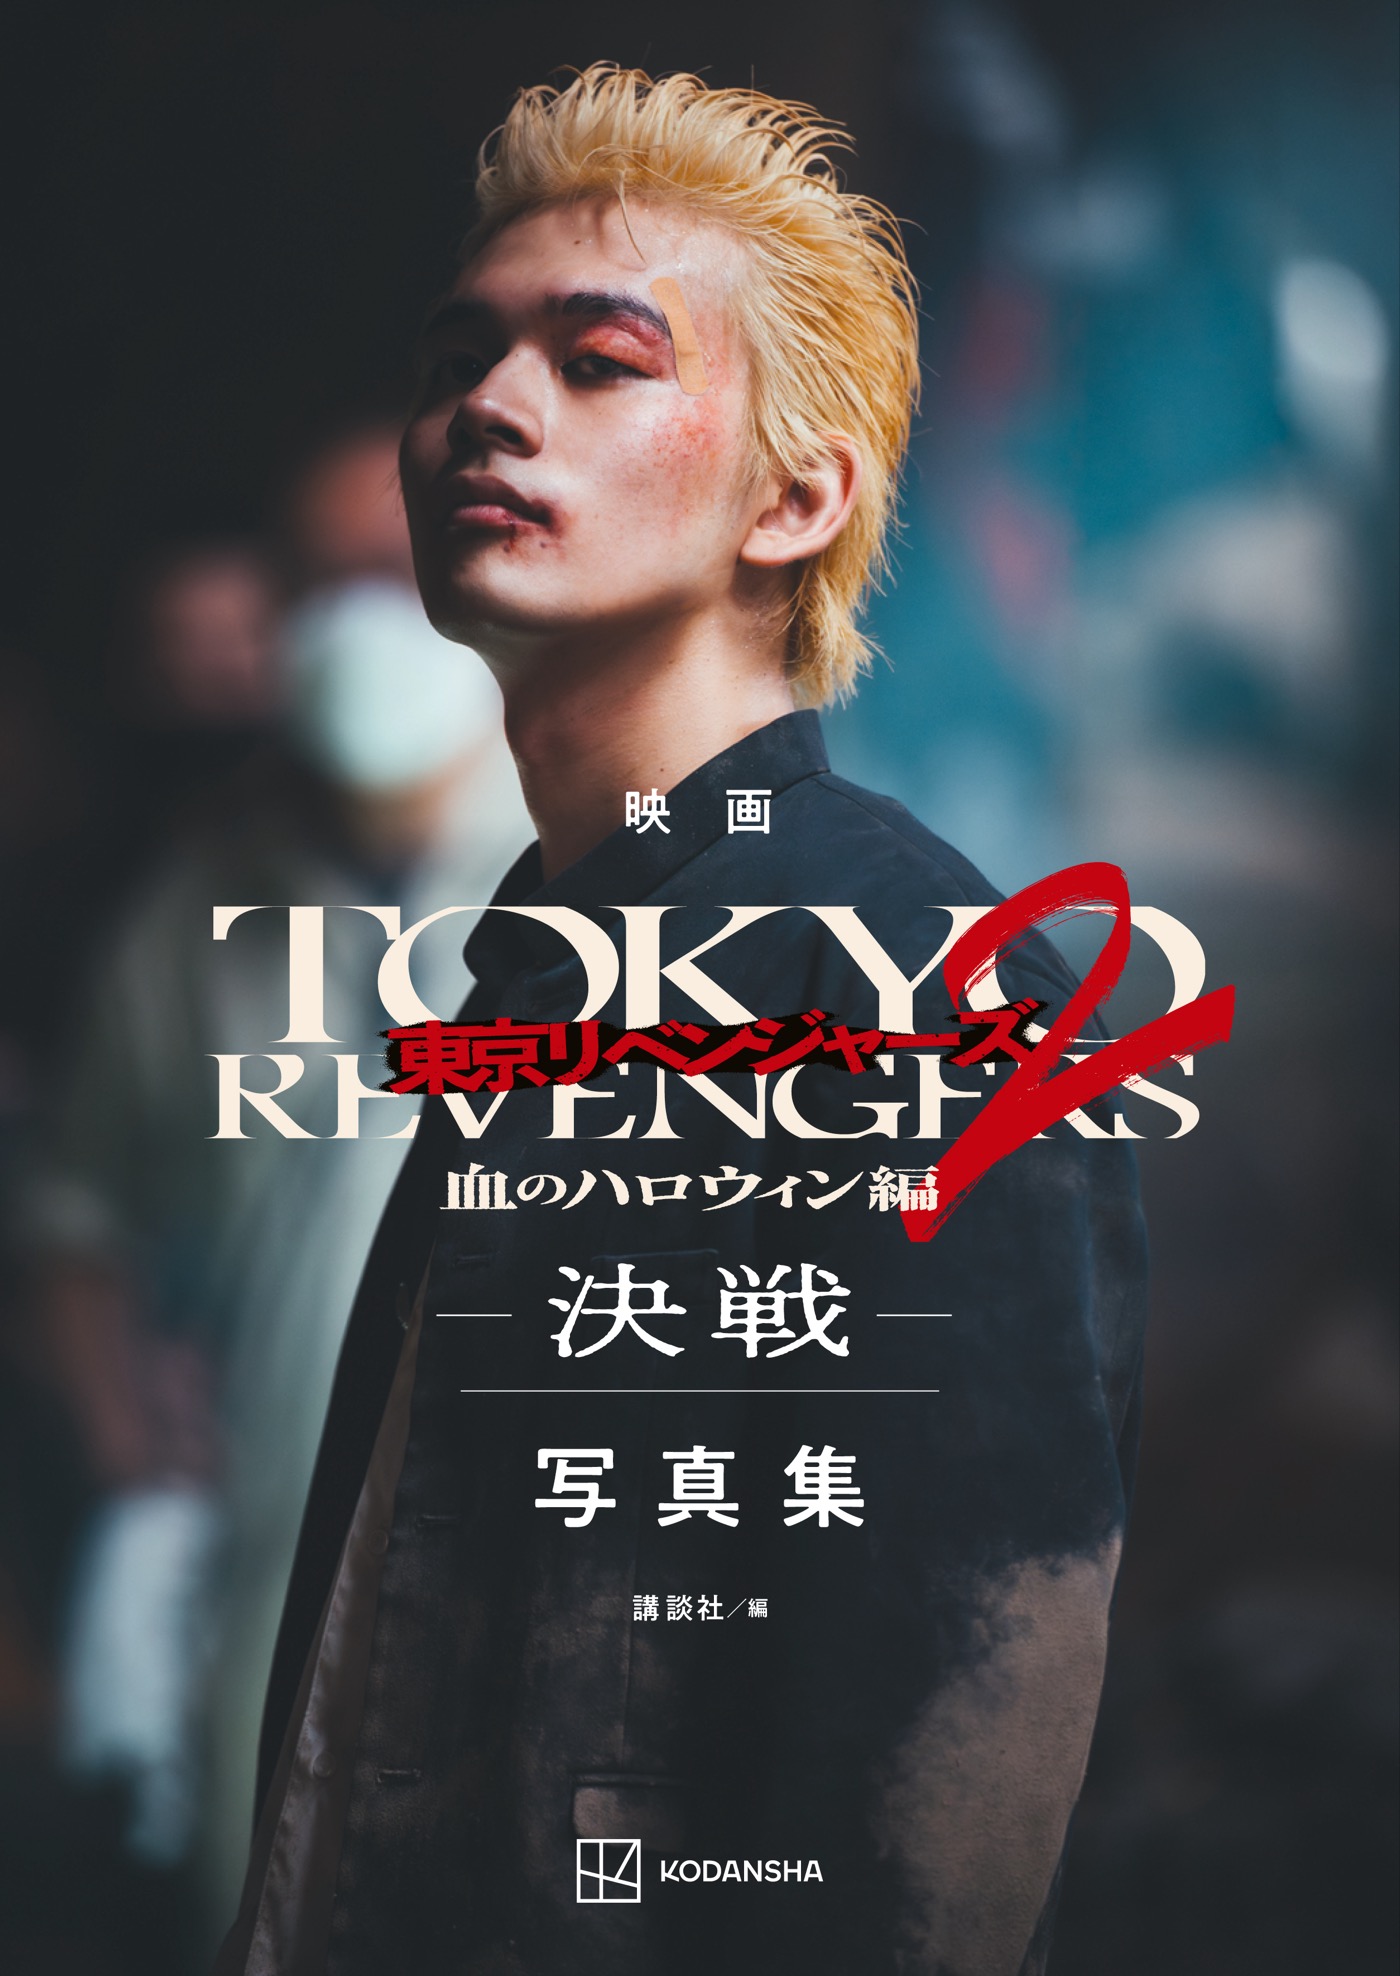 映画『東京リベンジャーズ2 血のハロウィン編 -決戦-』写真集は、映画の“追体験”ができる一冊に